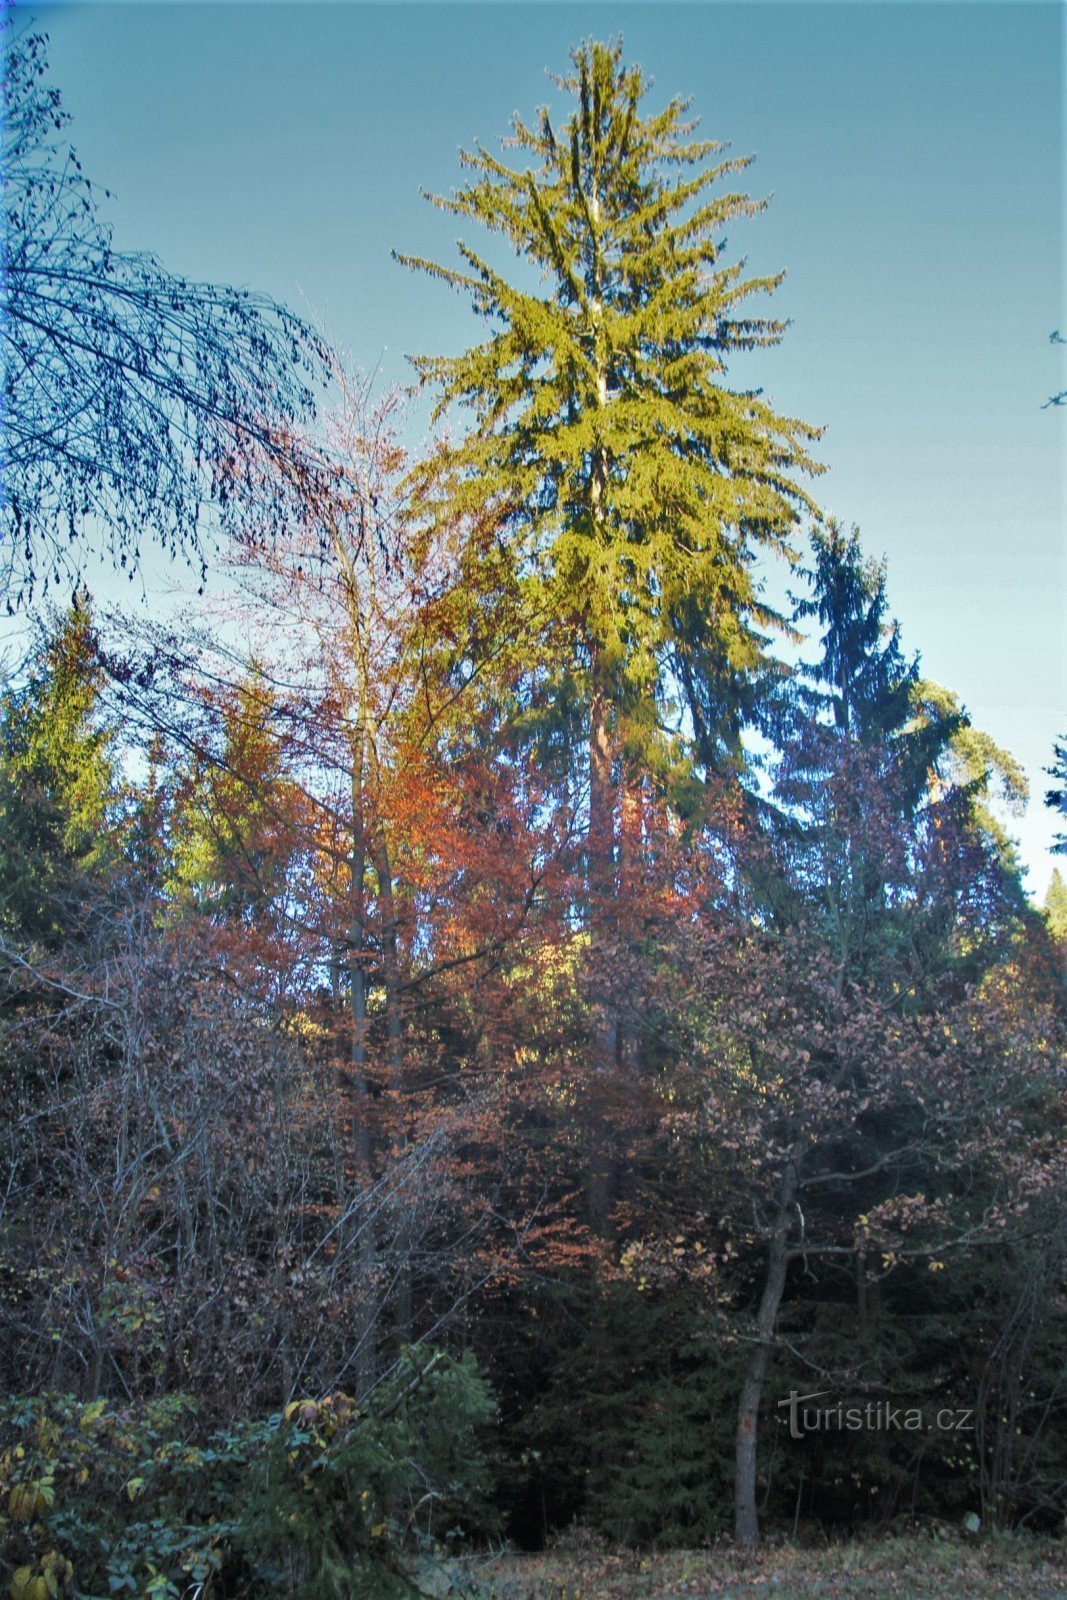 トウヒの幹は周囲の木々をXNUMXメートル以上超えています